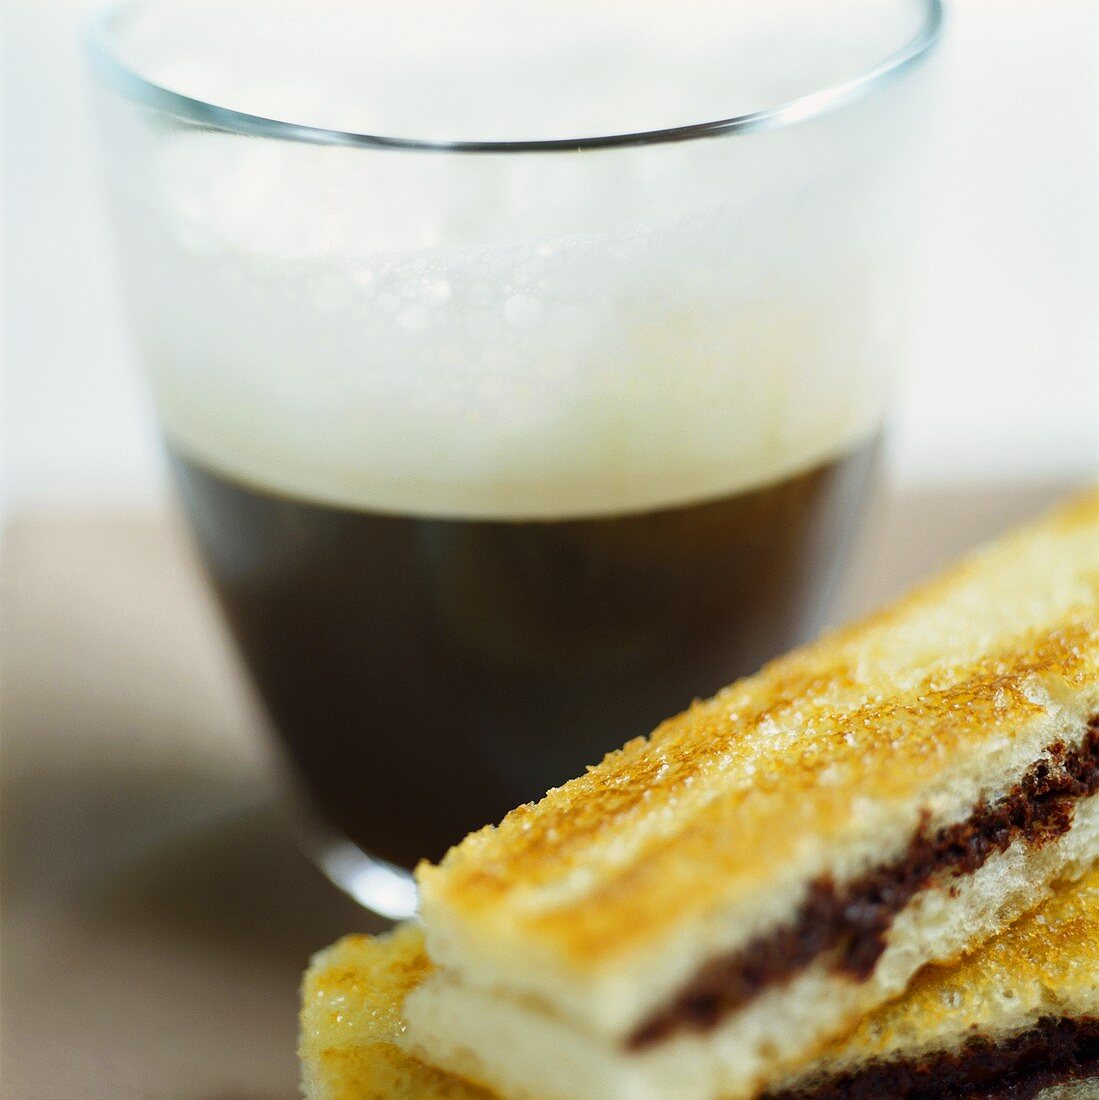 Espresso macchiato and cinnamon toast with chocolate cream